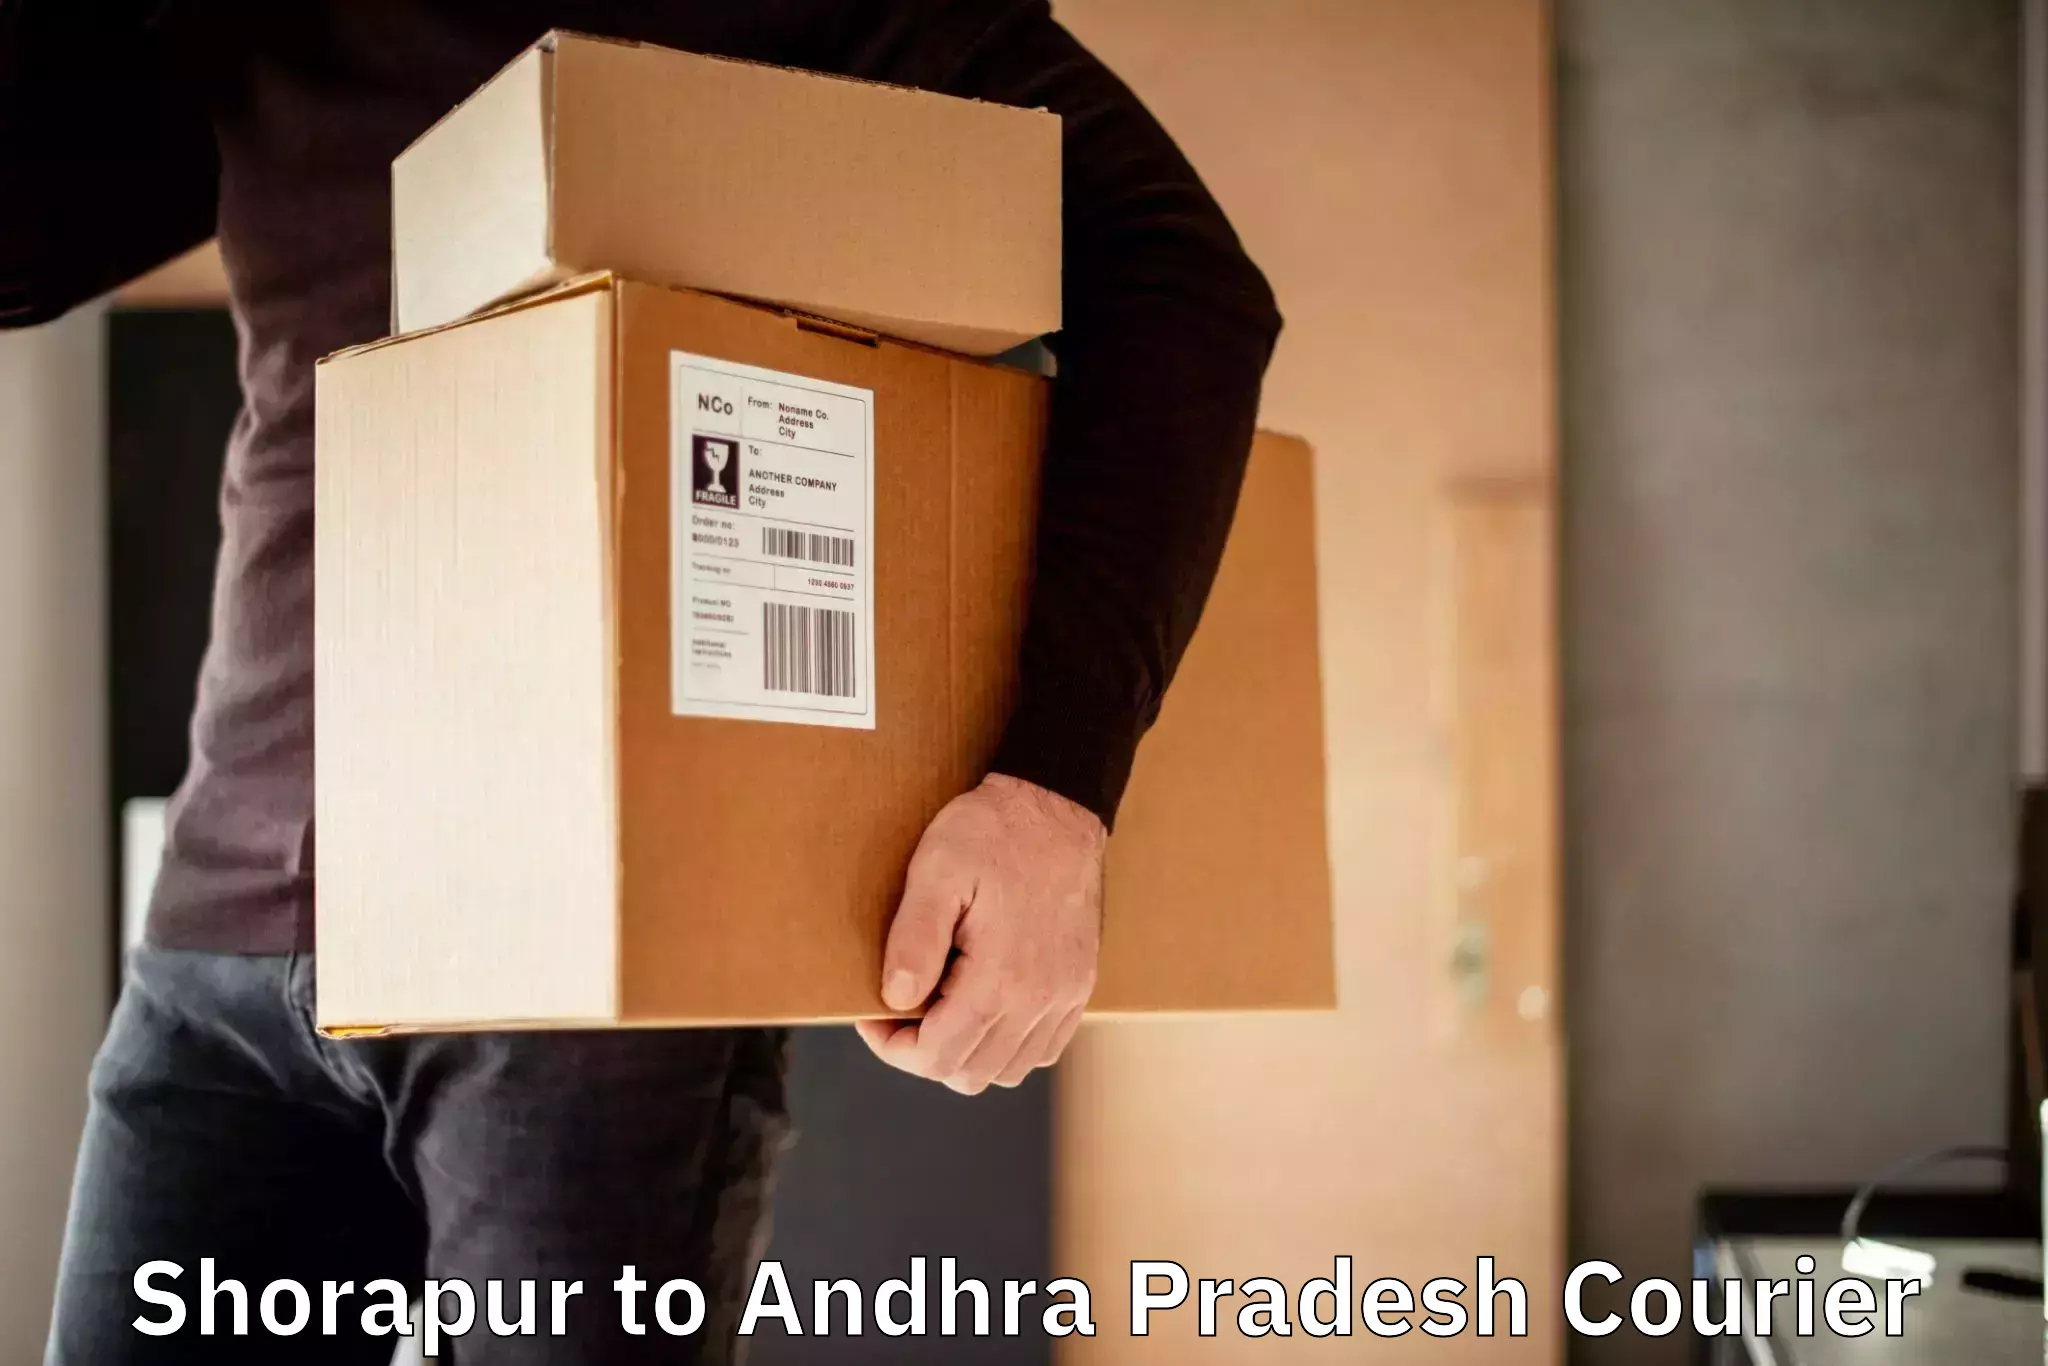 Express package handling Shorapur to Andhra Pradesh